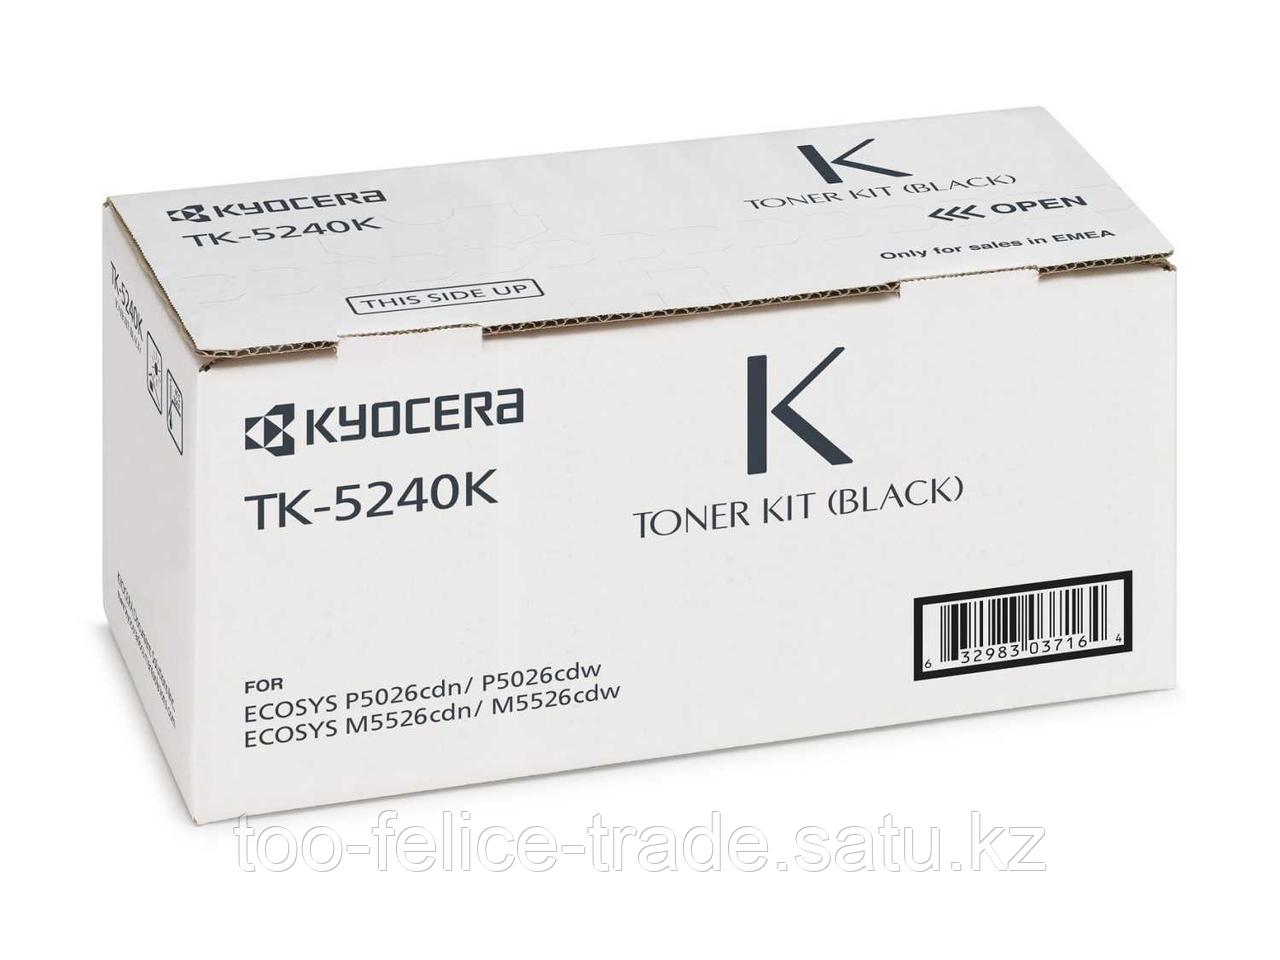 Картридж KYOCERA Тонер-картридж TK-5240K 4 000 стр. Black для P5026cdn/cdw, M5526cdn/cdw